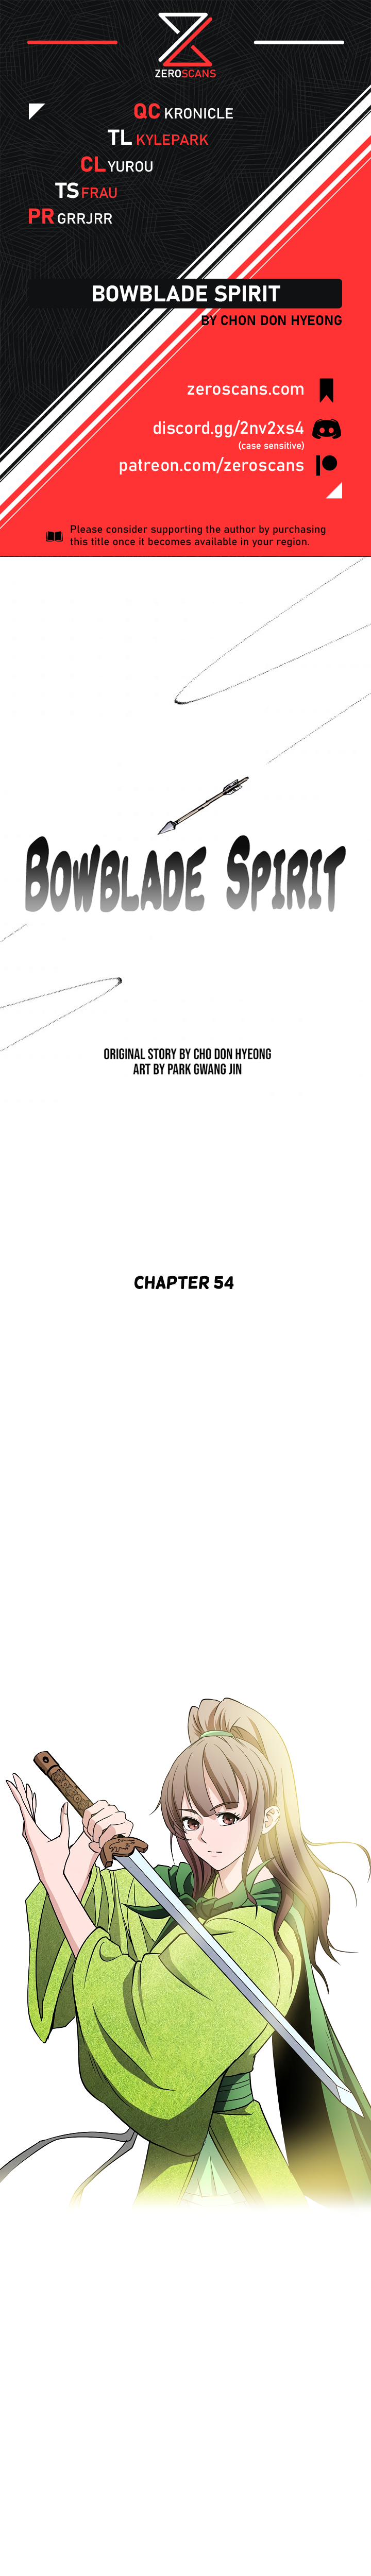 Bowblade Spirit - Chapter 3742 - Image 1